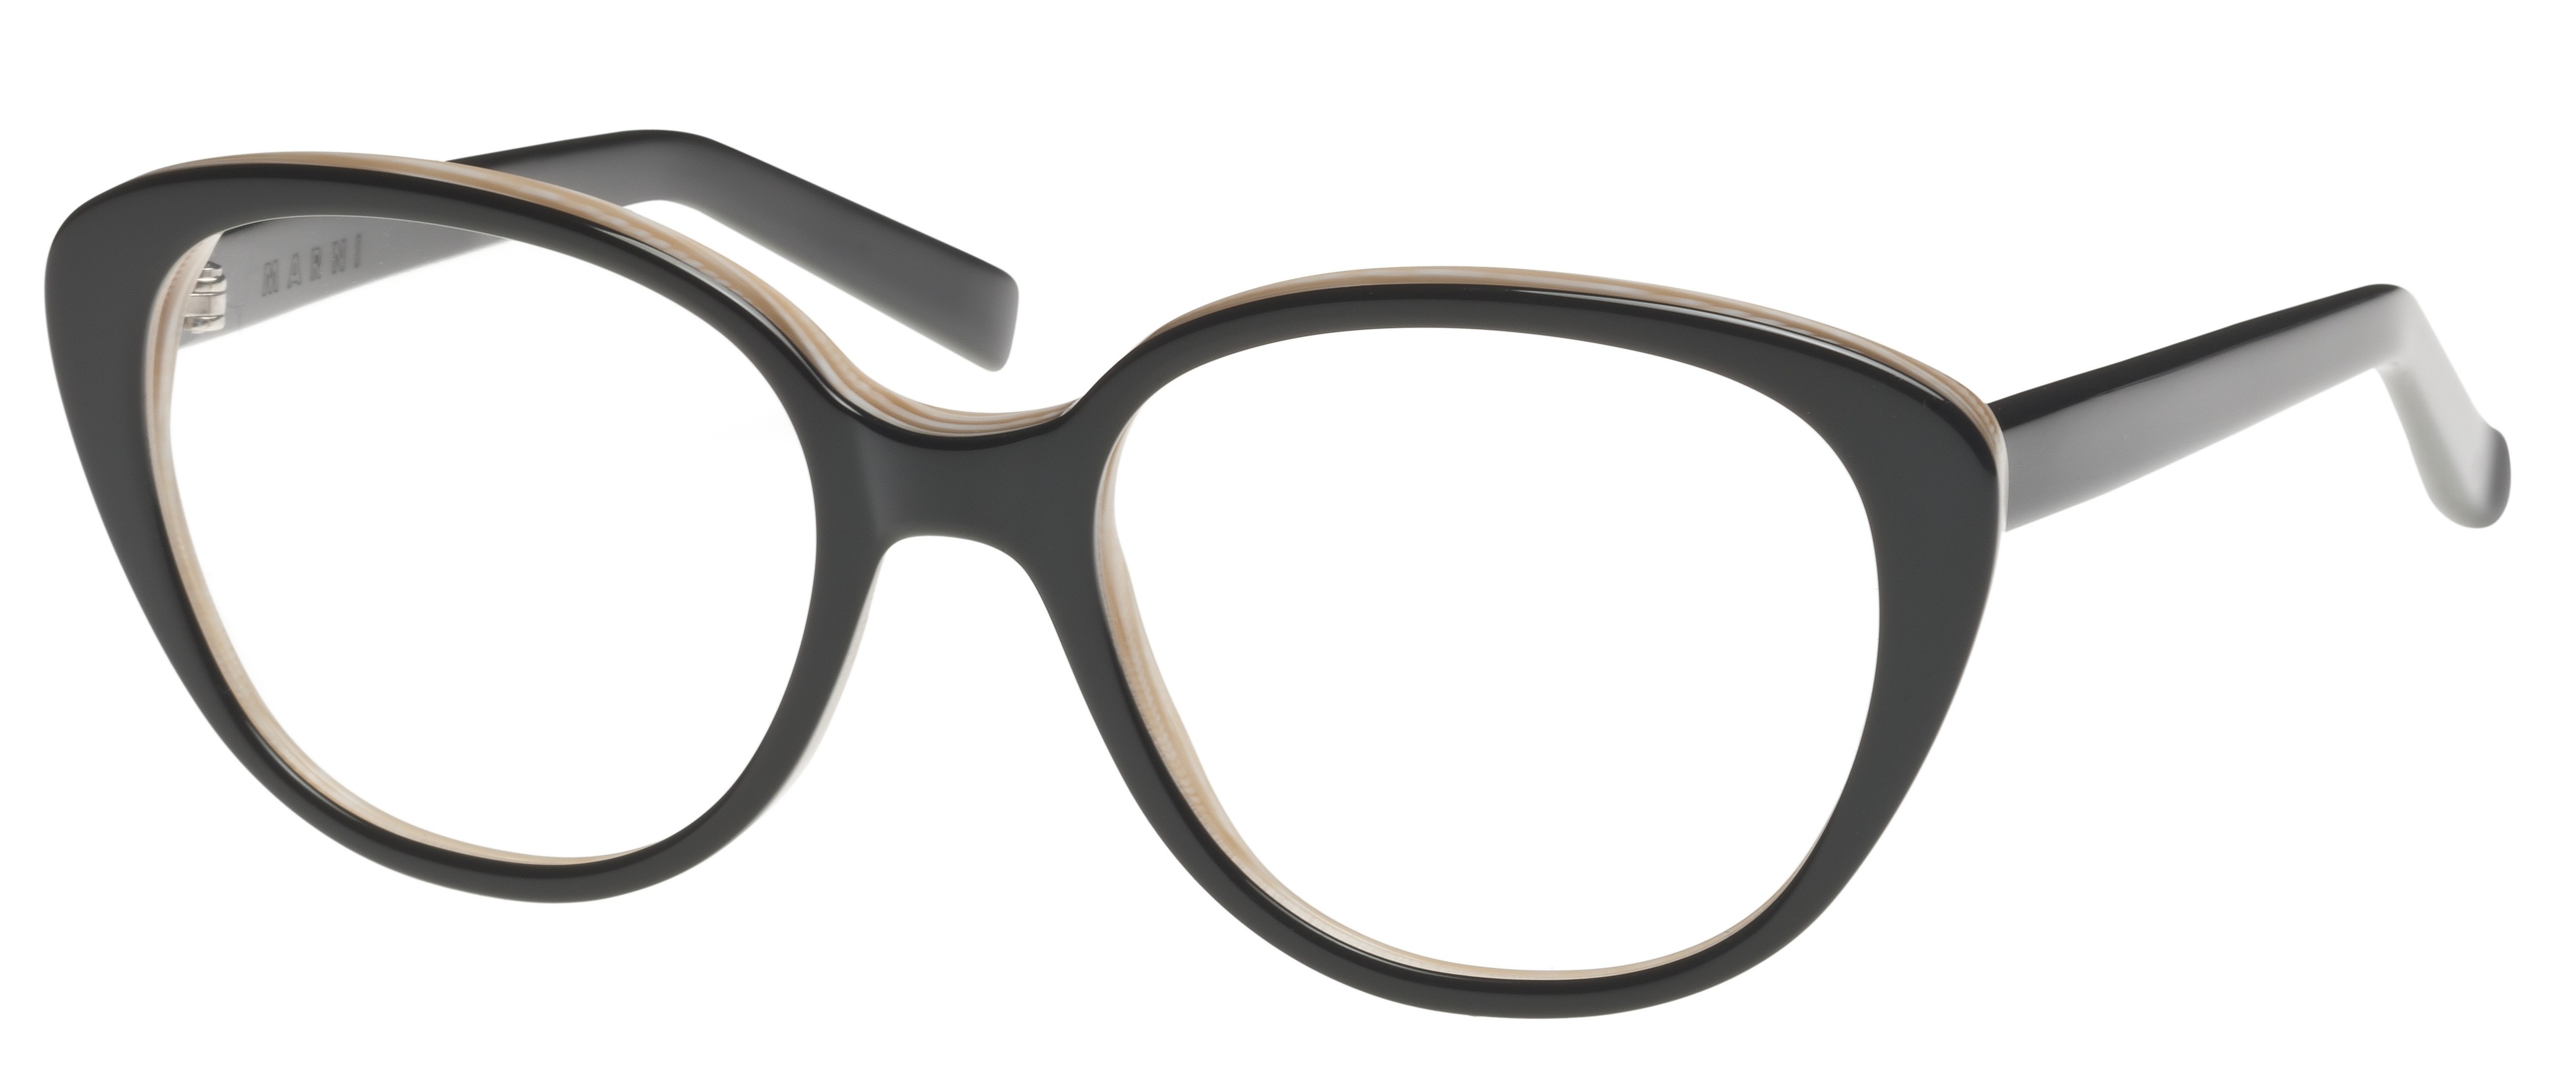 Marni 708 3 Black/Horn glasses